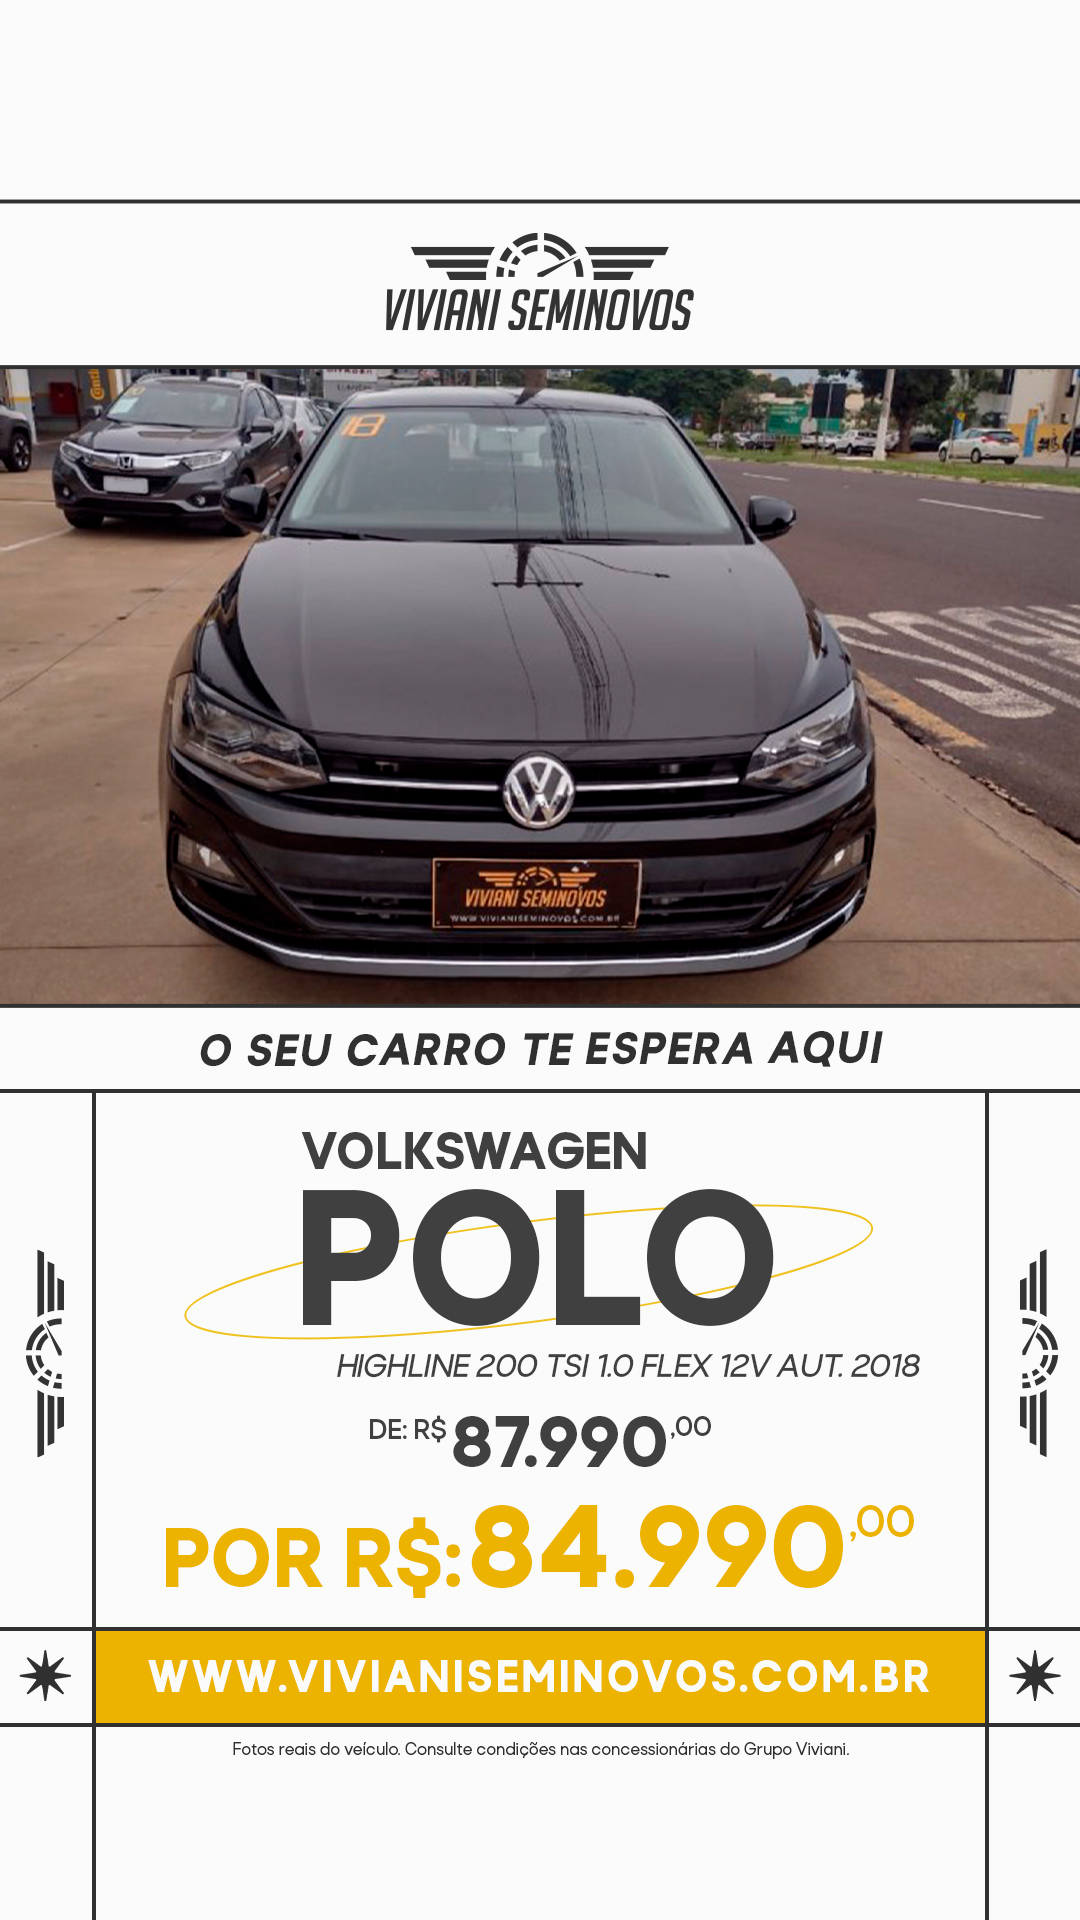 Volkswagen Polo Highline 200 TSI 1.0 Flex 12V Aut.